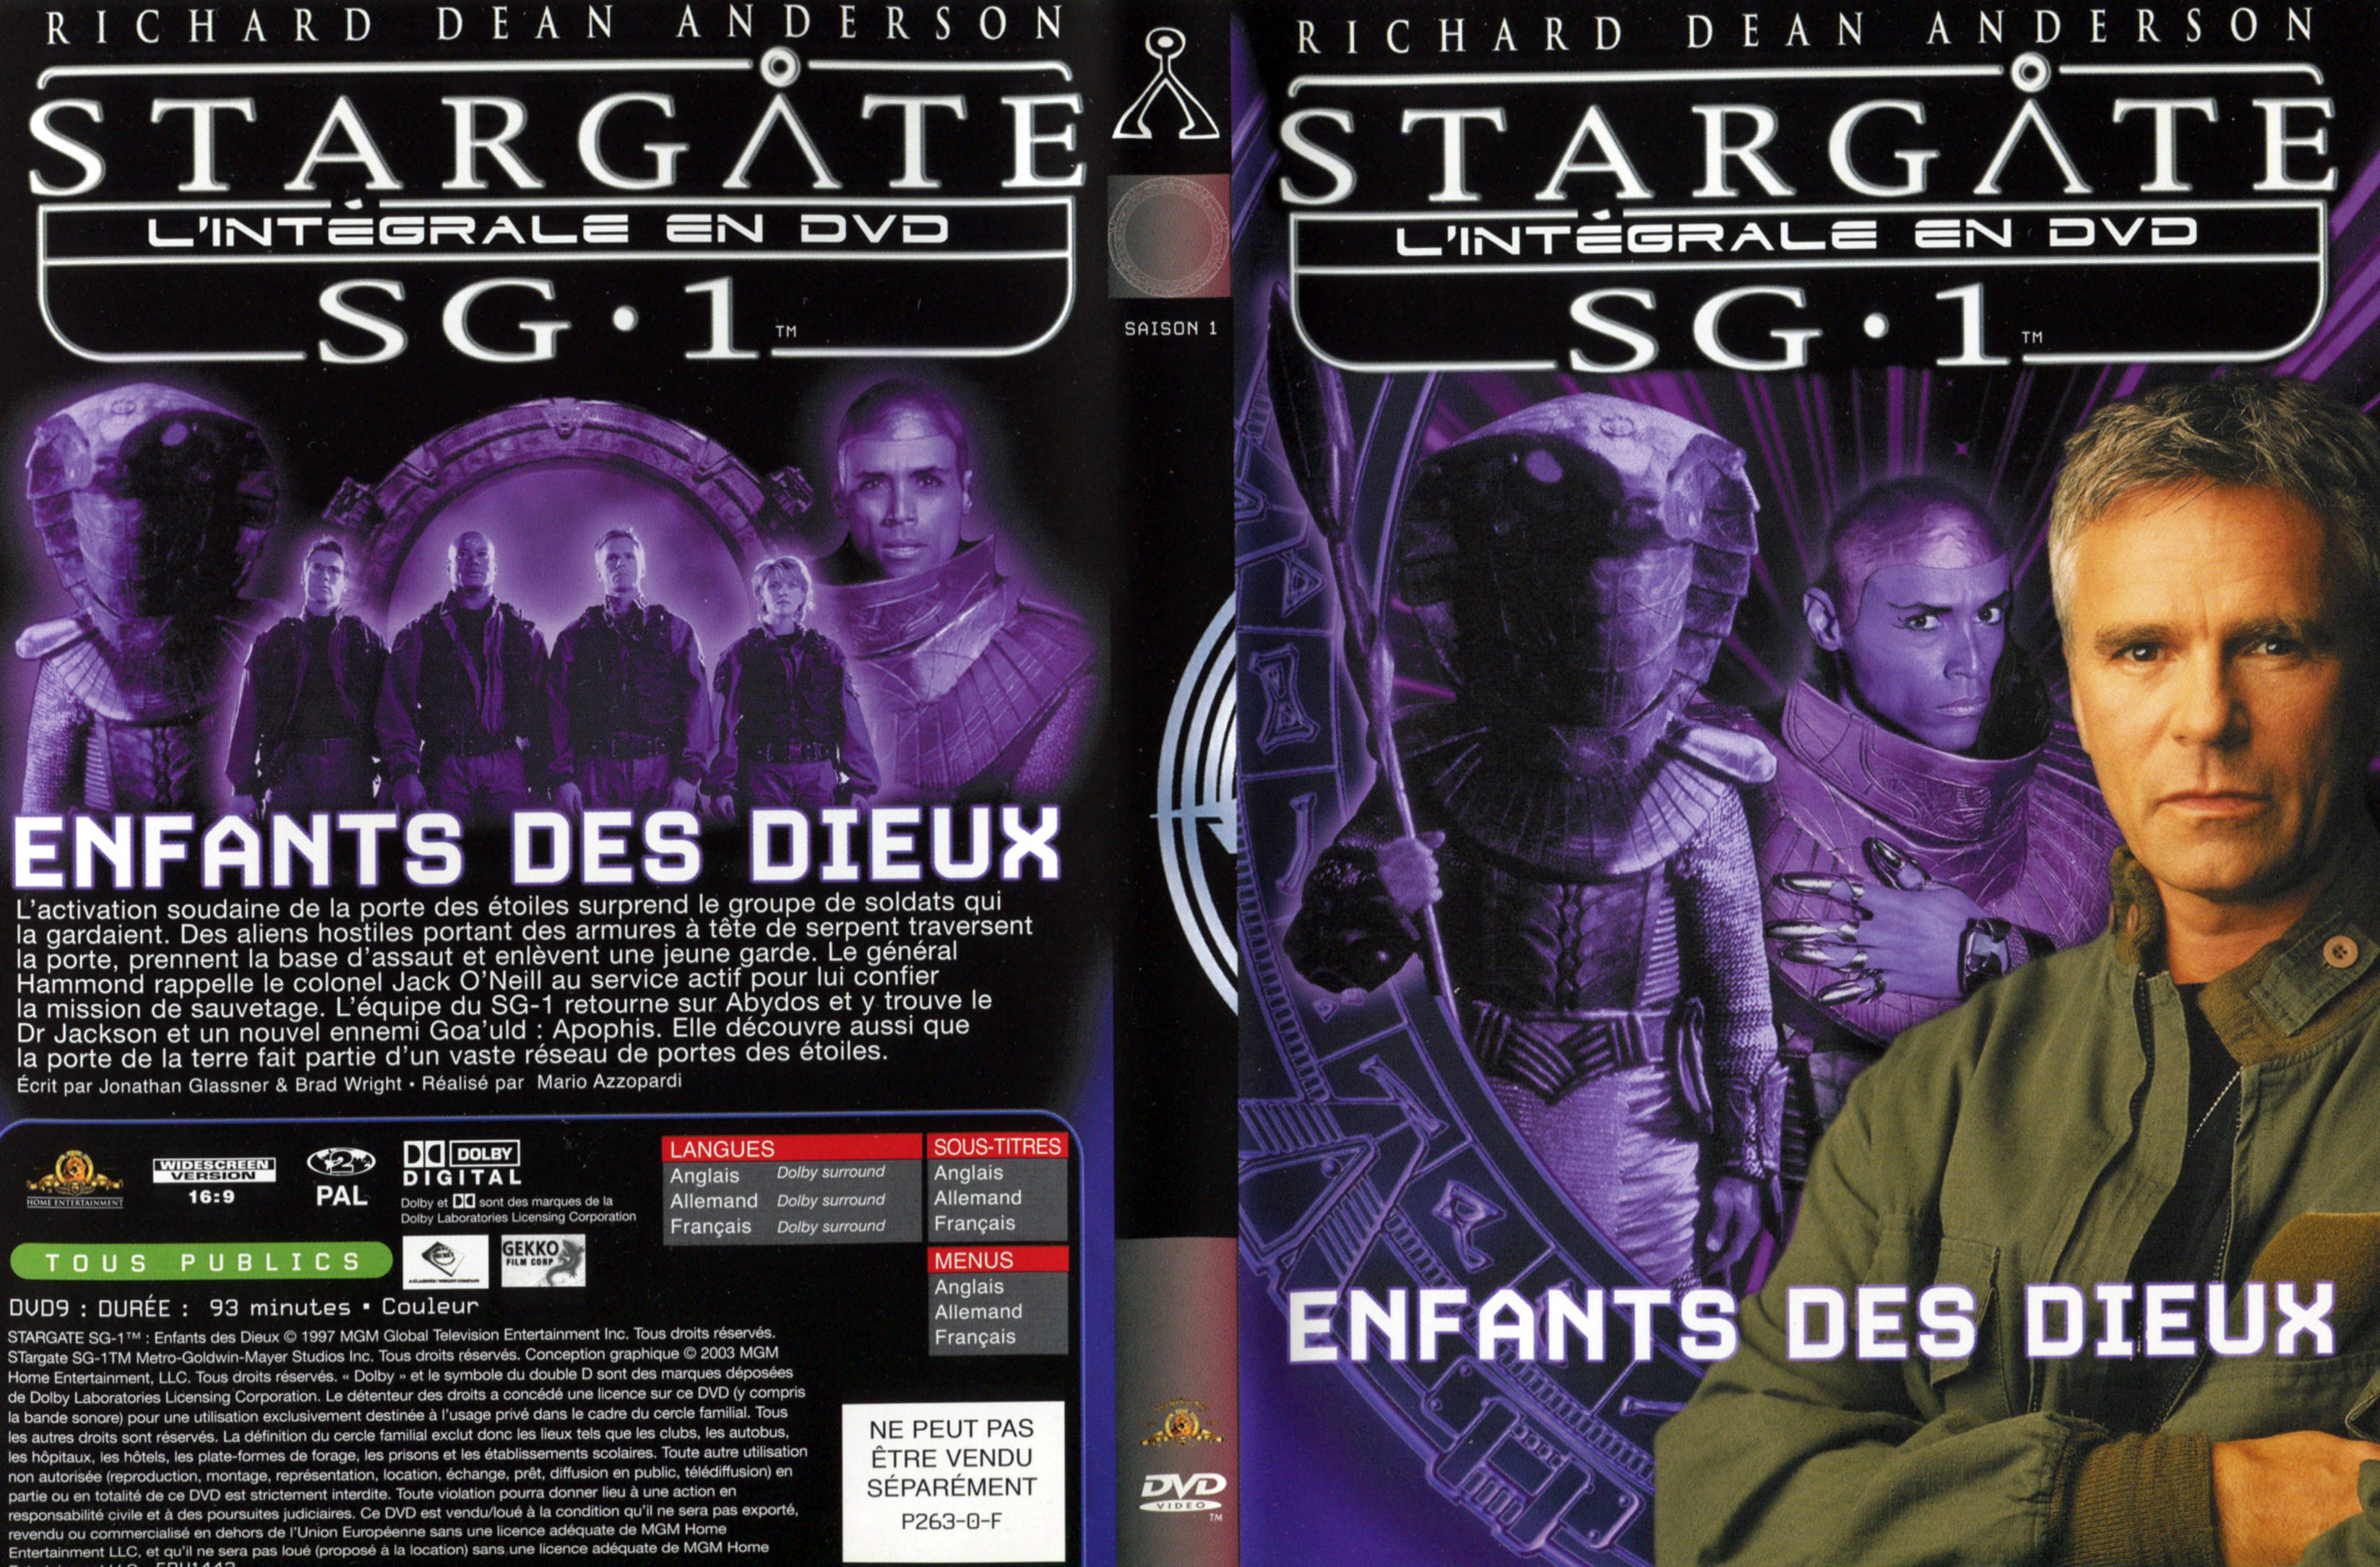 Jaquette DVD Stargate SG1 Intgrale Saison 1 vol 00